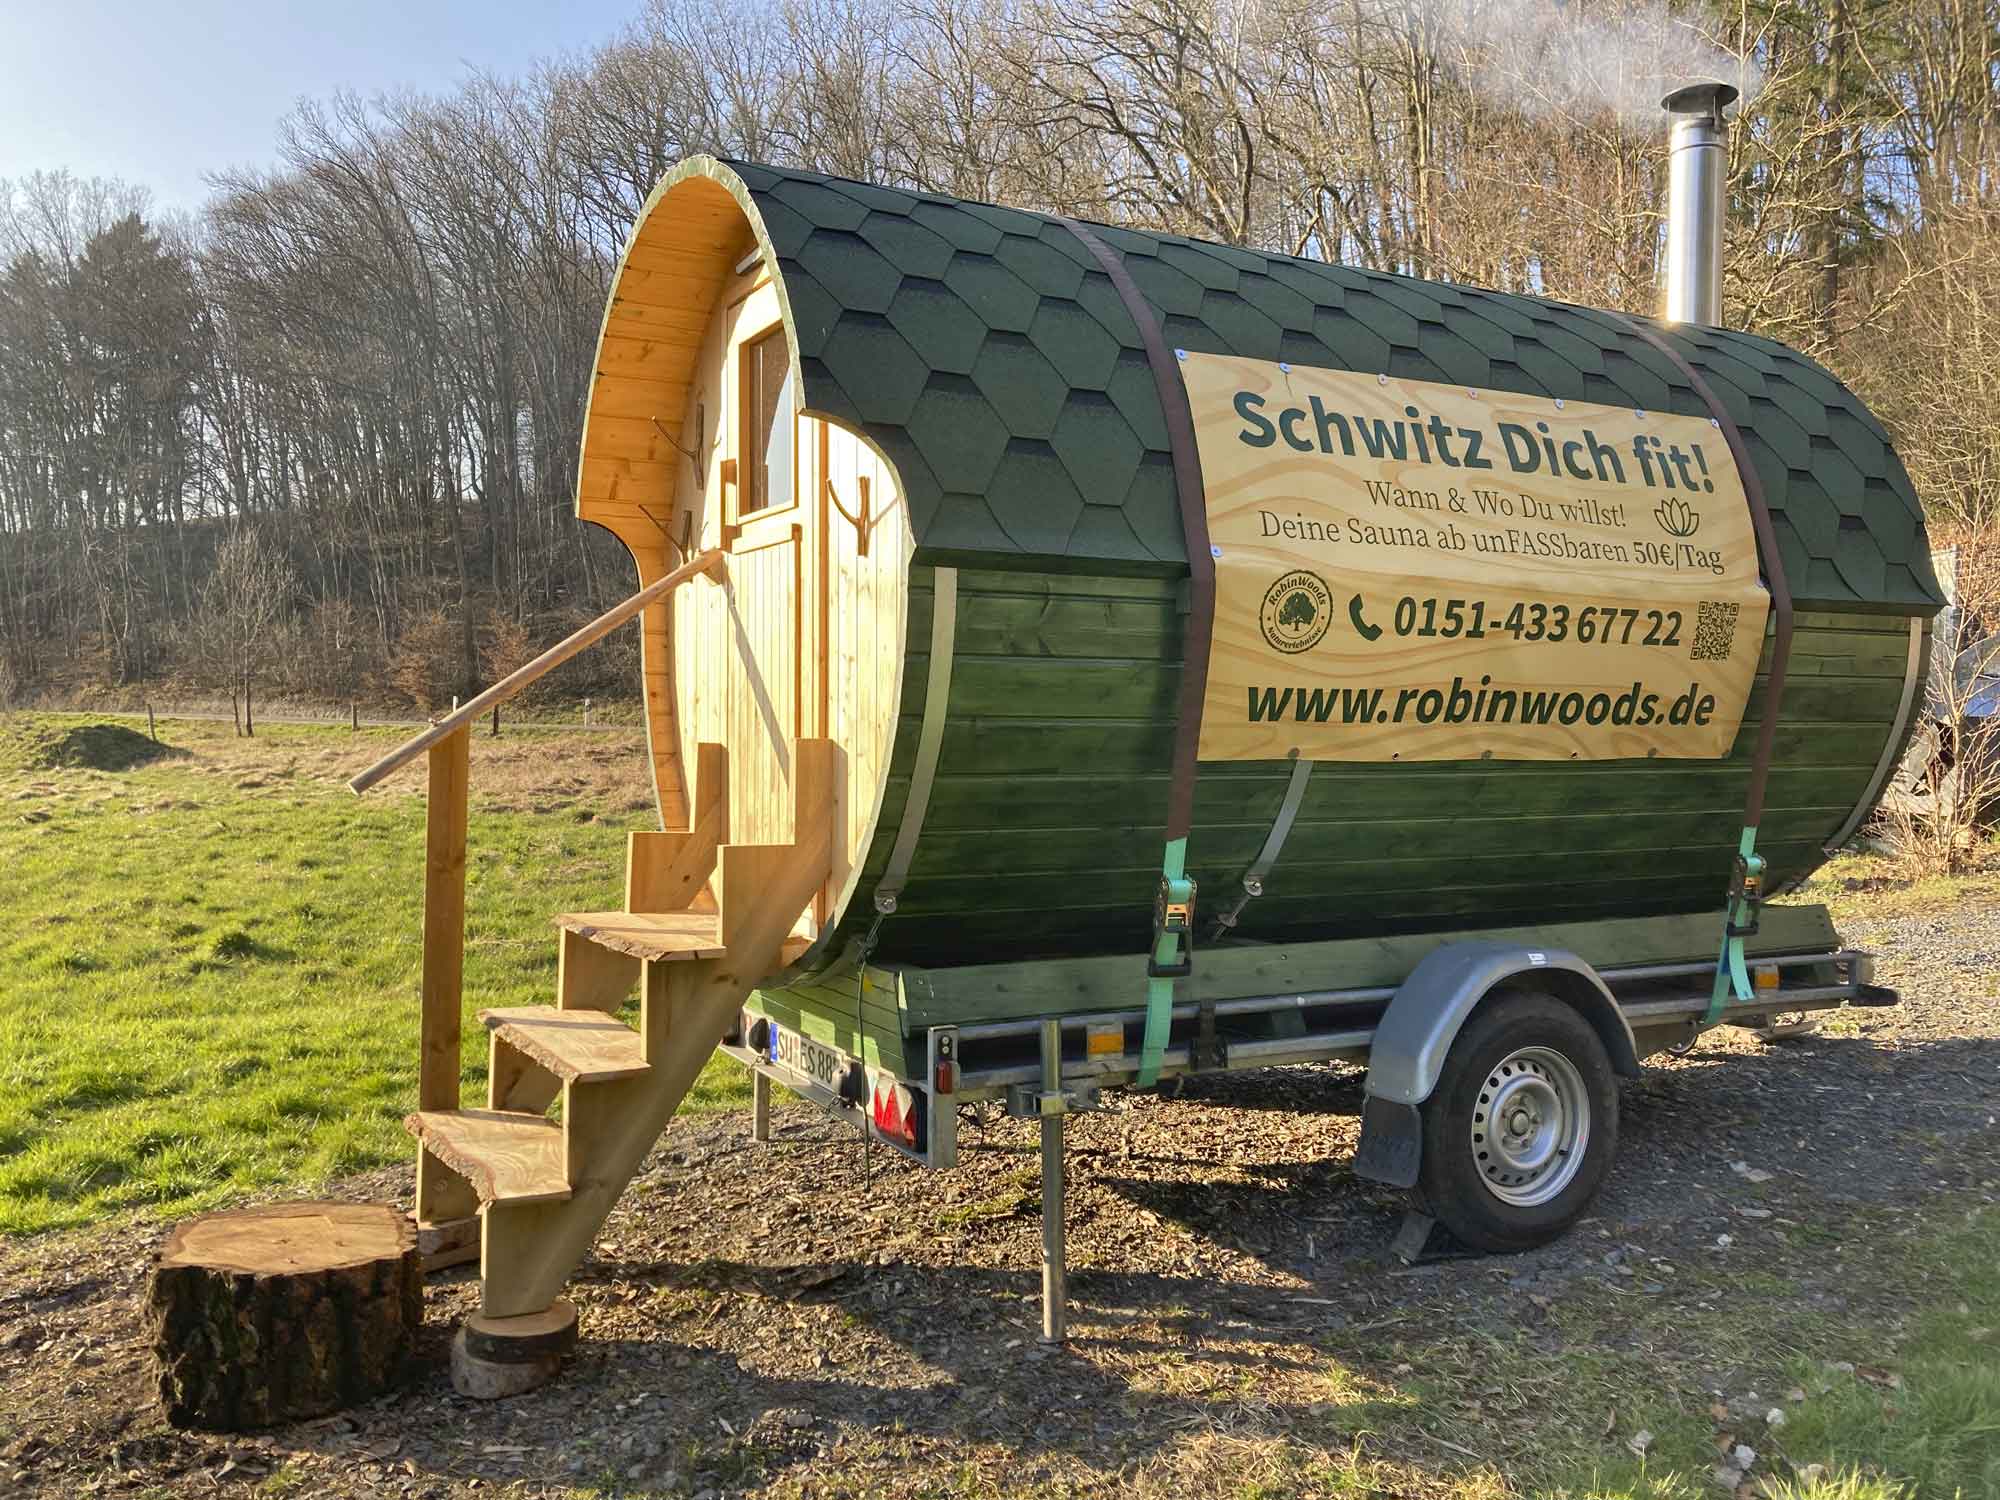 RobinWoods mobile Fass Sauna ist in Hennef und lässt sich auf seinem Anhänger prima überall hinstellen.